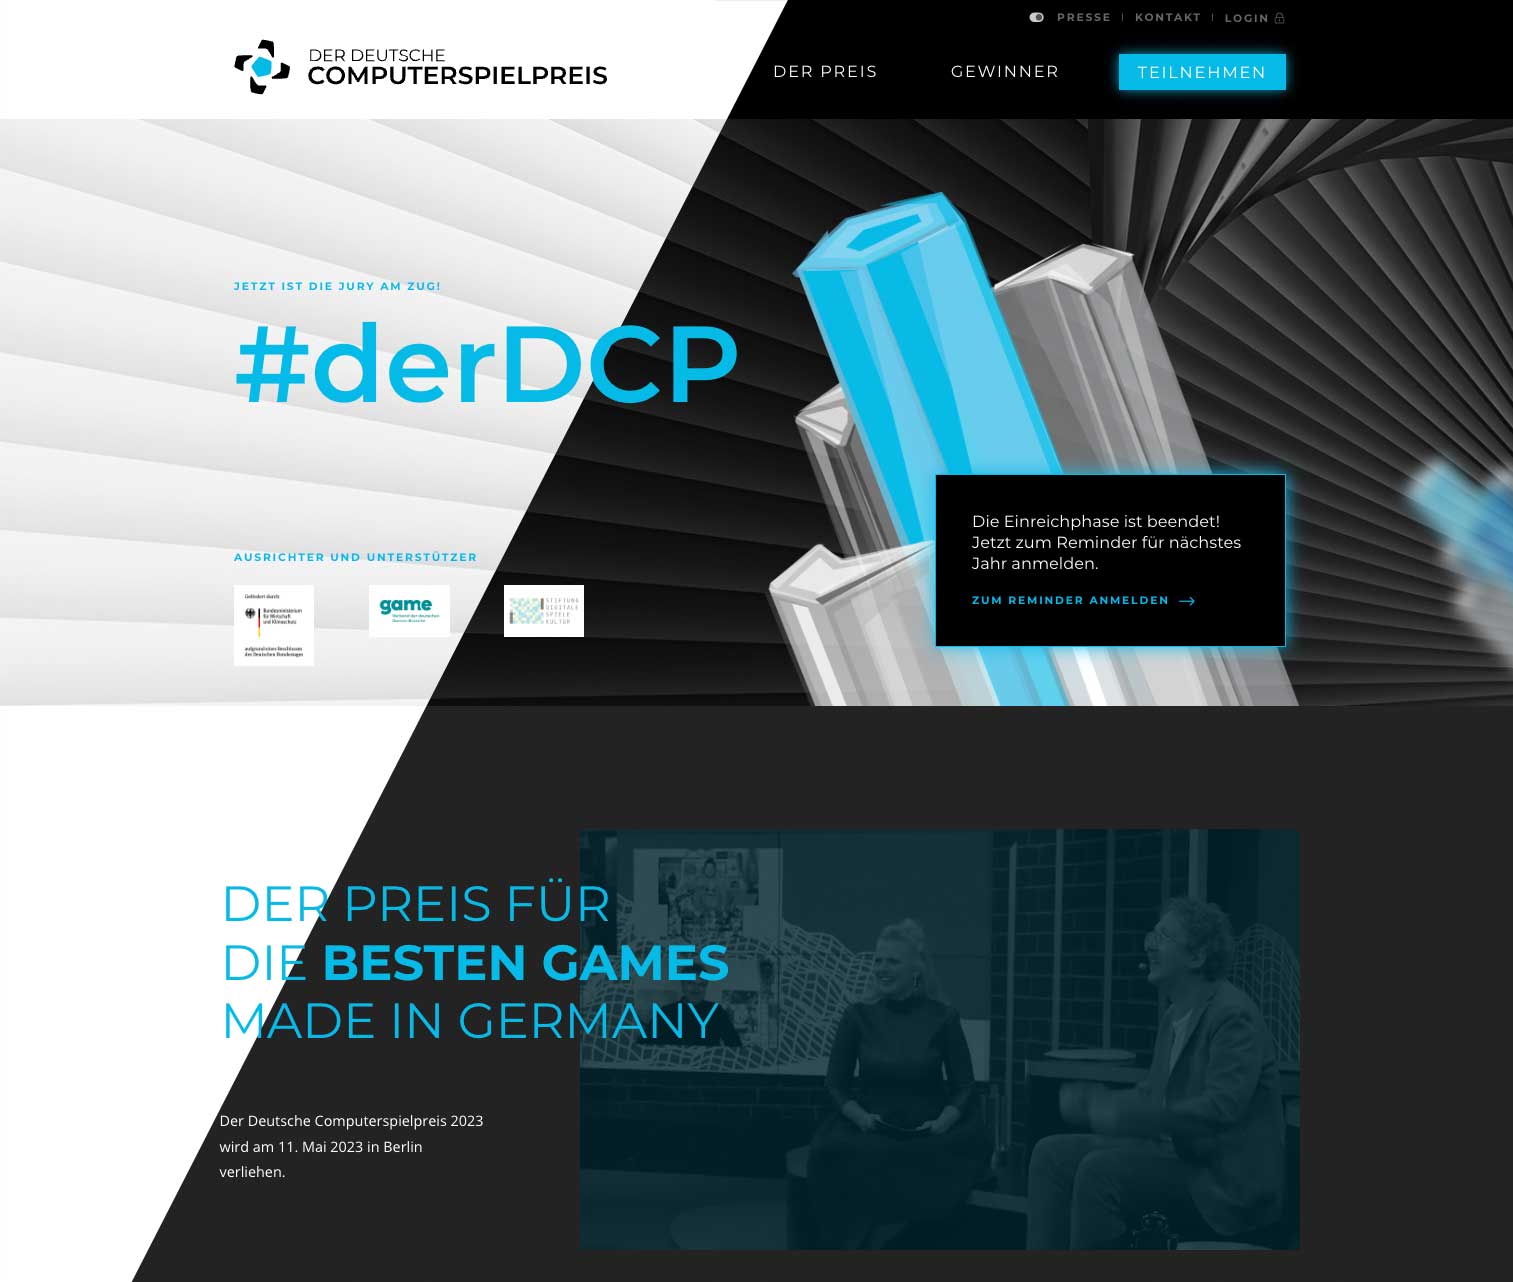 DCP Black and White - Deutscher Computerspielpreis (DCP)